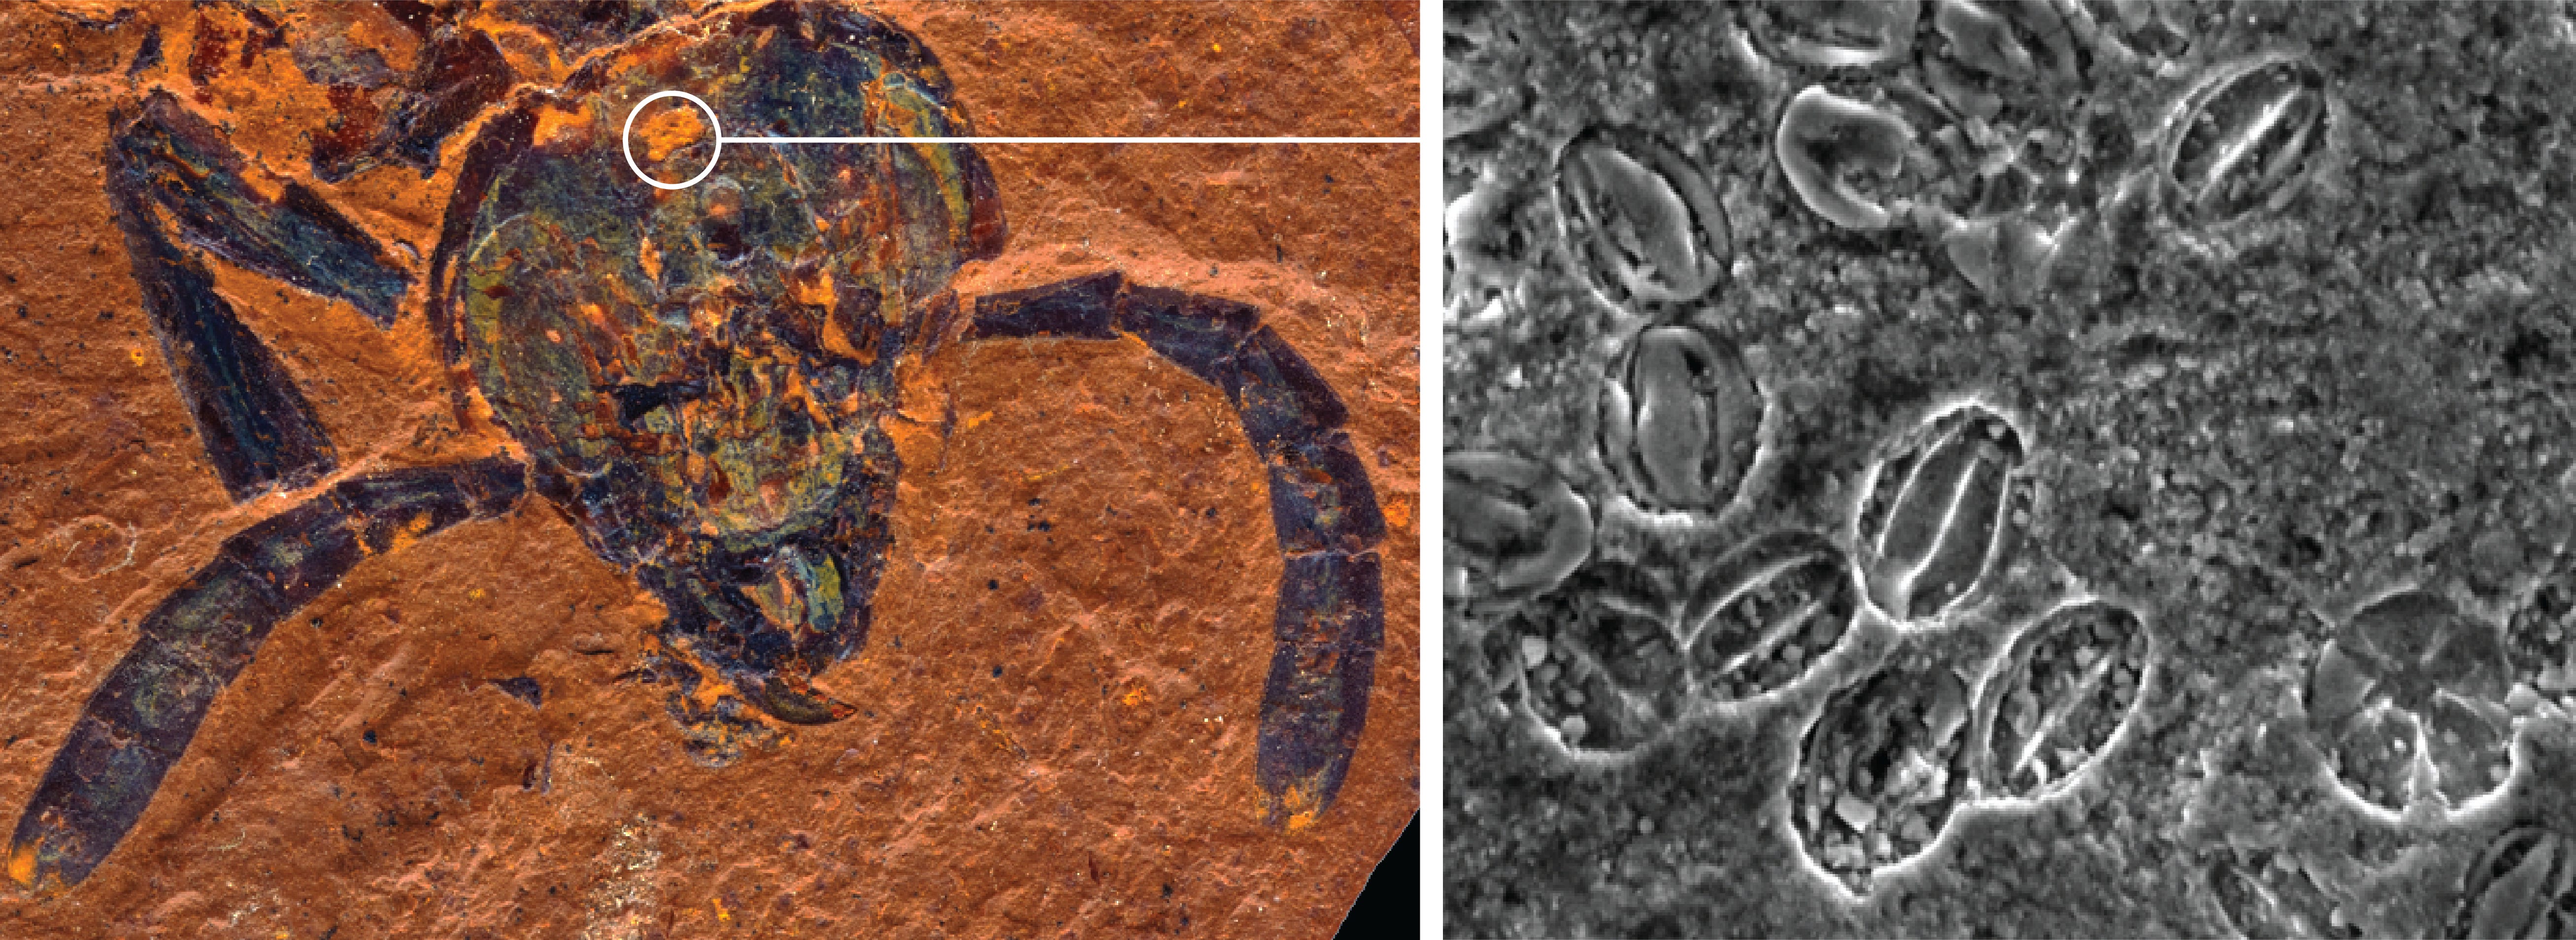 geteiltes Bild links Blattwespenkopffossil rechts Schwarzweiß-Mikroskopaufnahme von Pollenkörnern